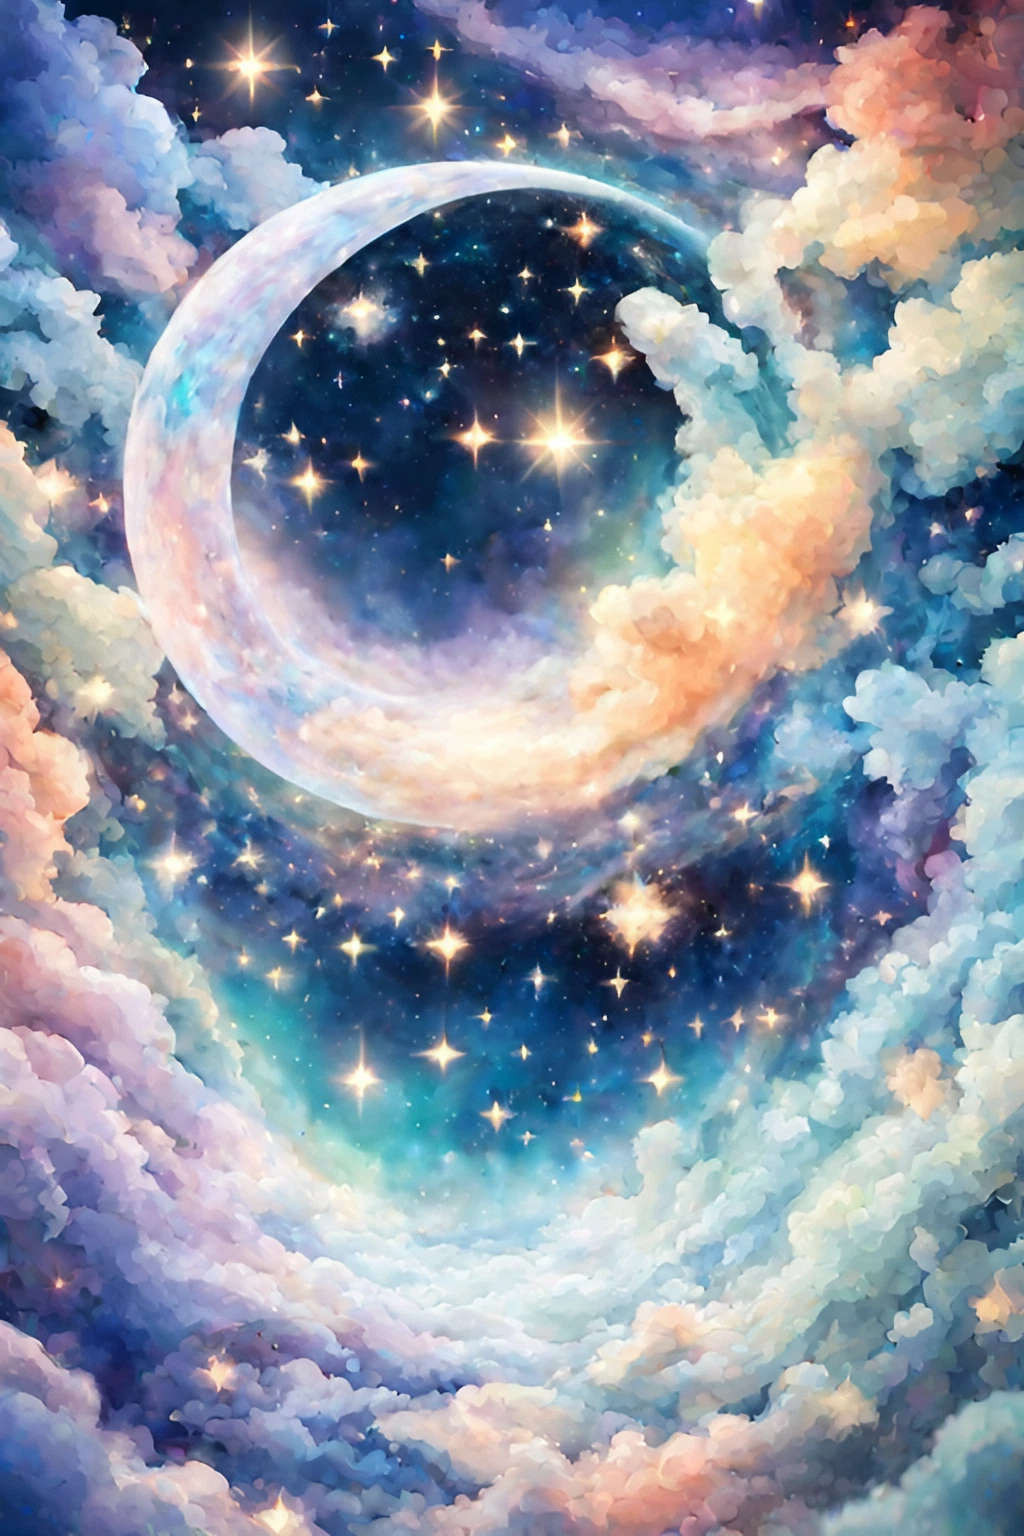 綺麗な三日月と癒しのファンタジーな夜空の星の無料イラスト画像素材